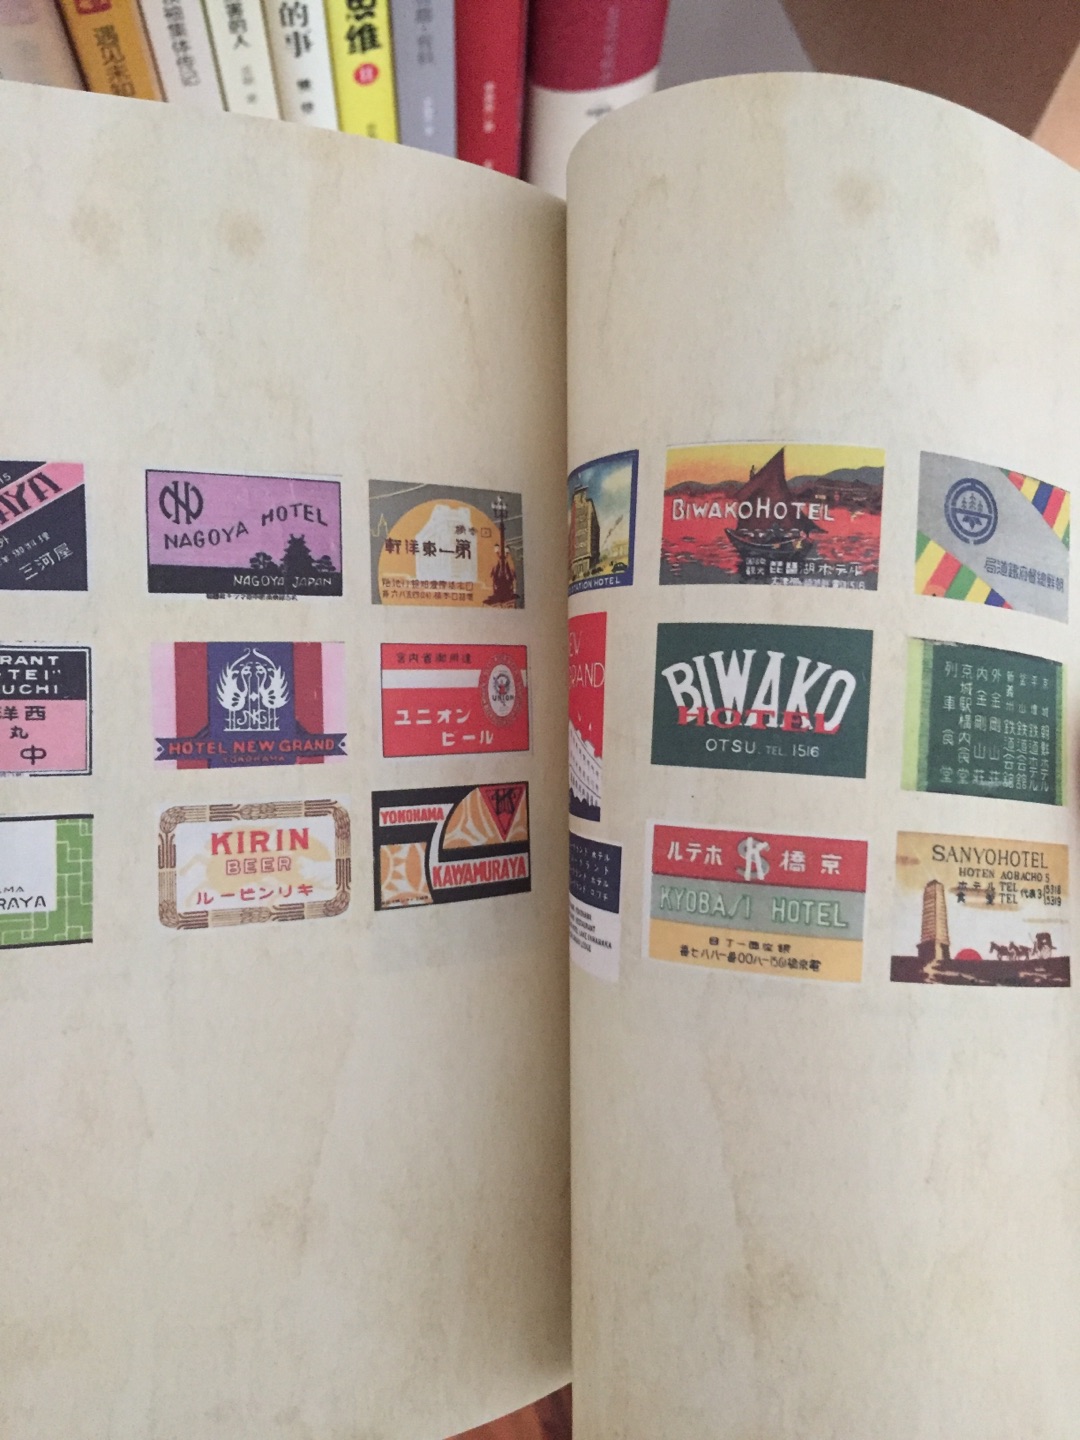 想去日本的可以了解一下，了解日本第一书。花火以为是卡片，原来是本书册子。